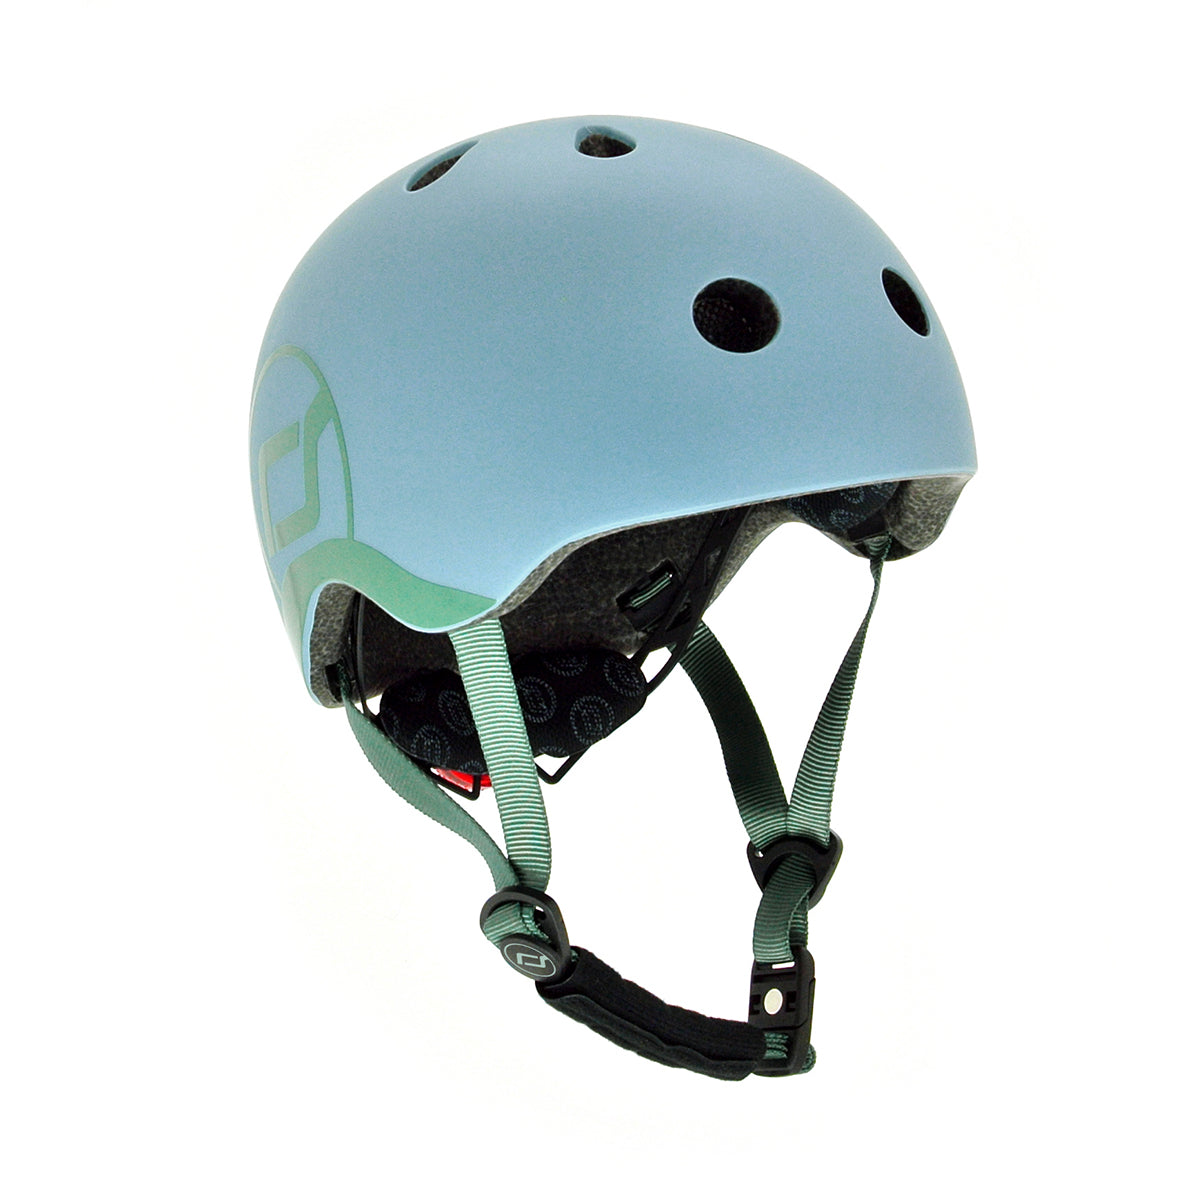 Scoot and Ride Helmet (XXS)